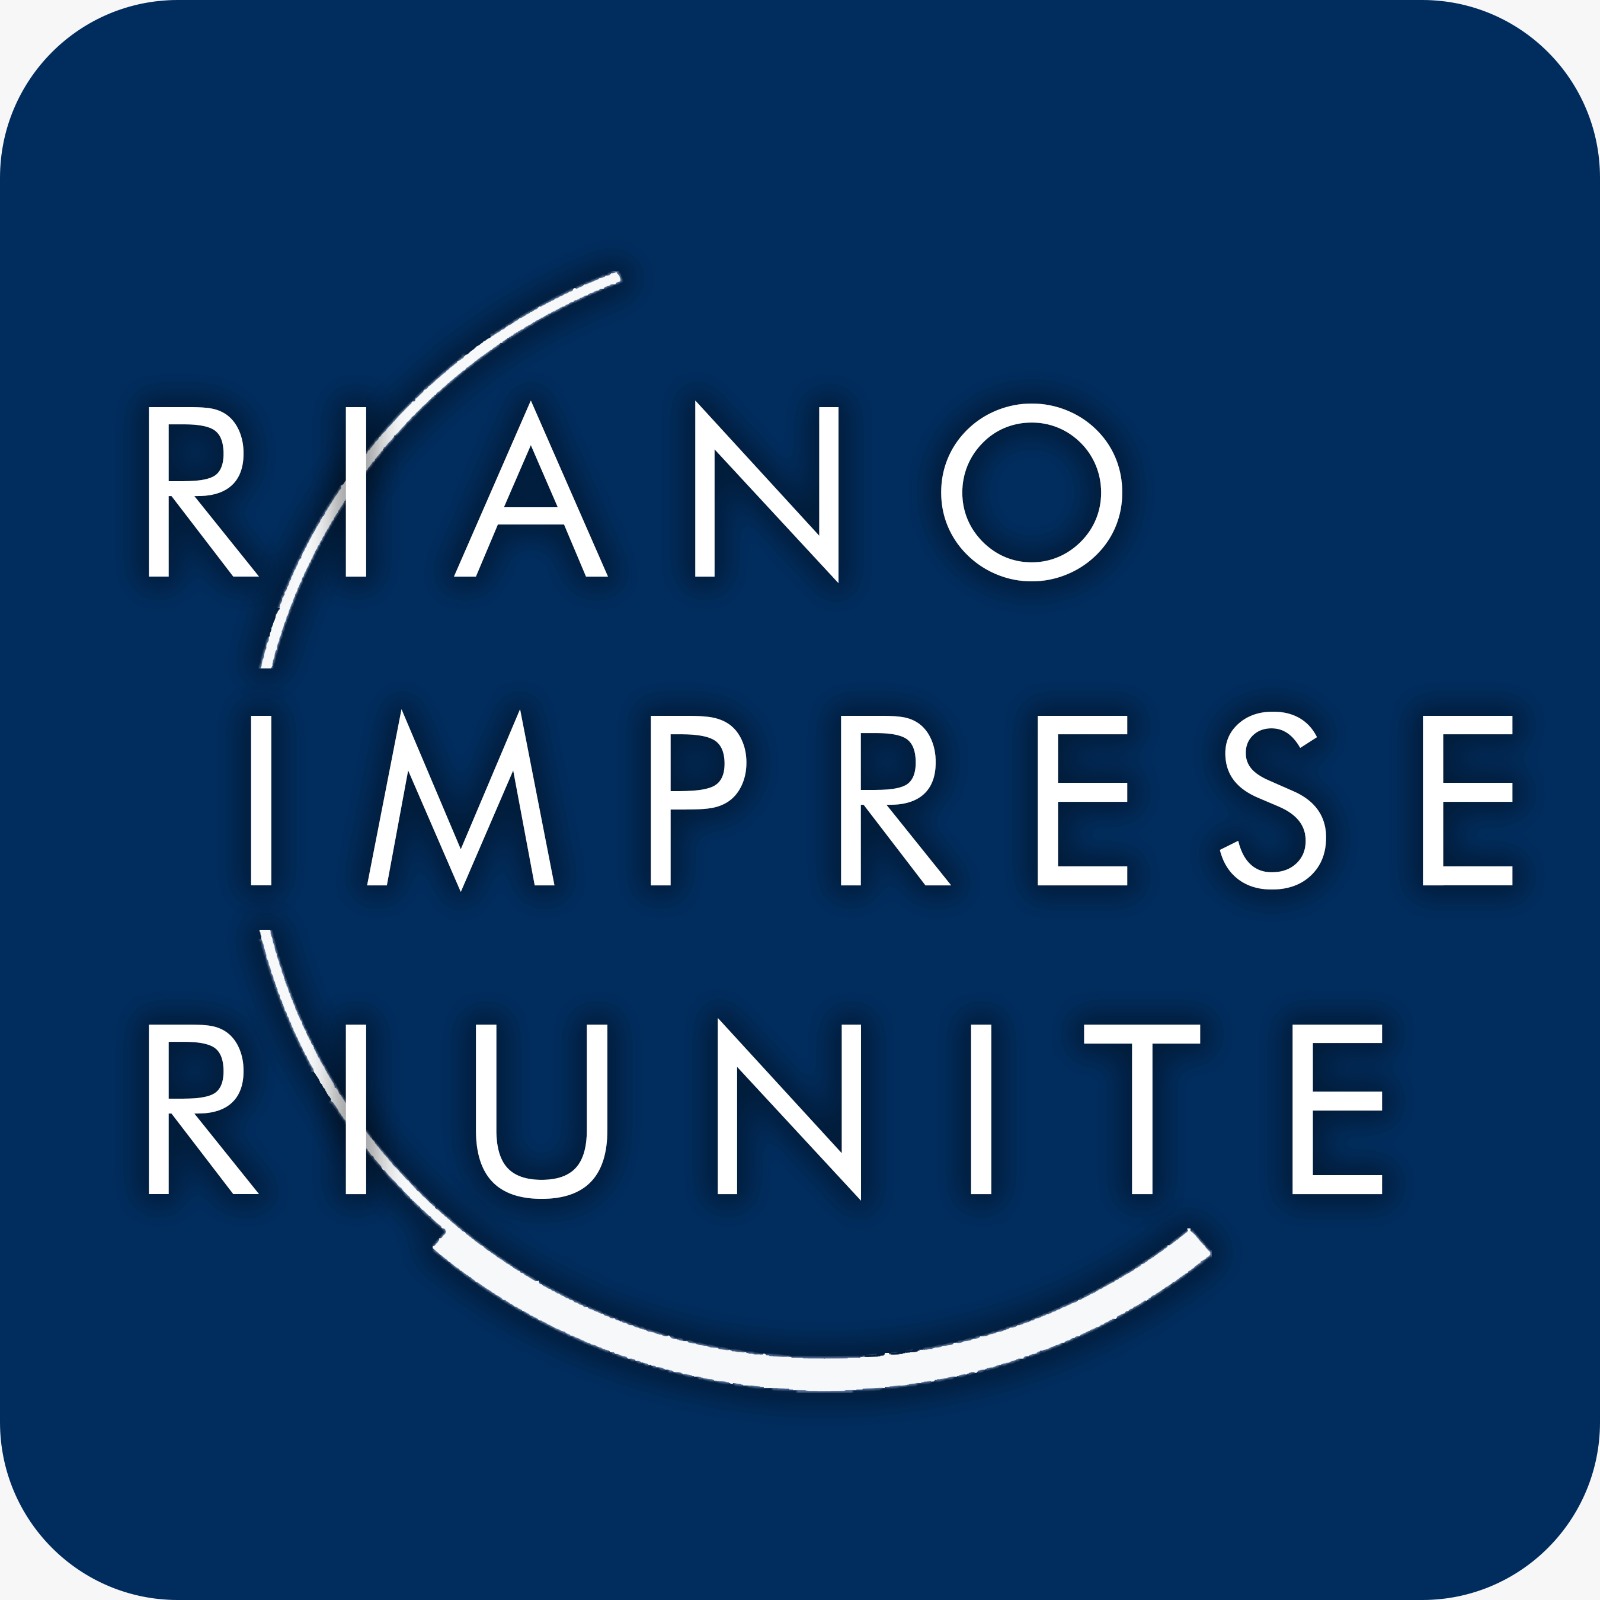 RIANO IMPRESE RIUNITE – CONVIENE